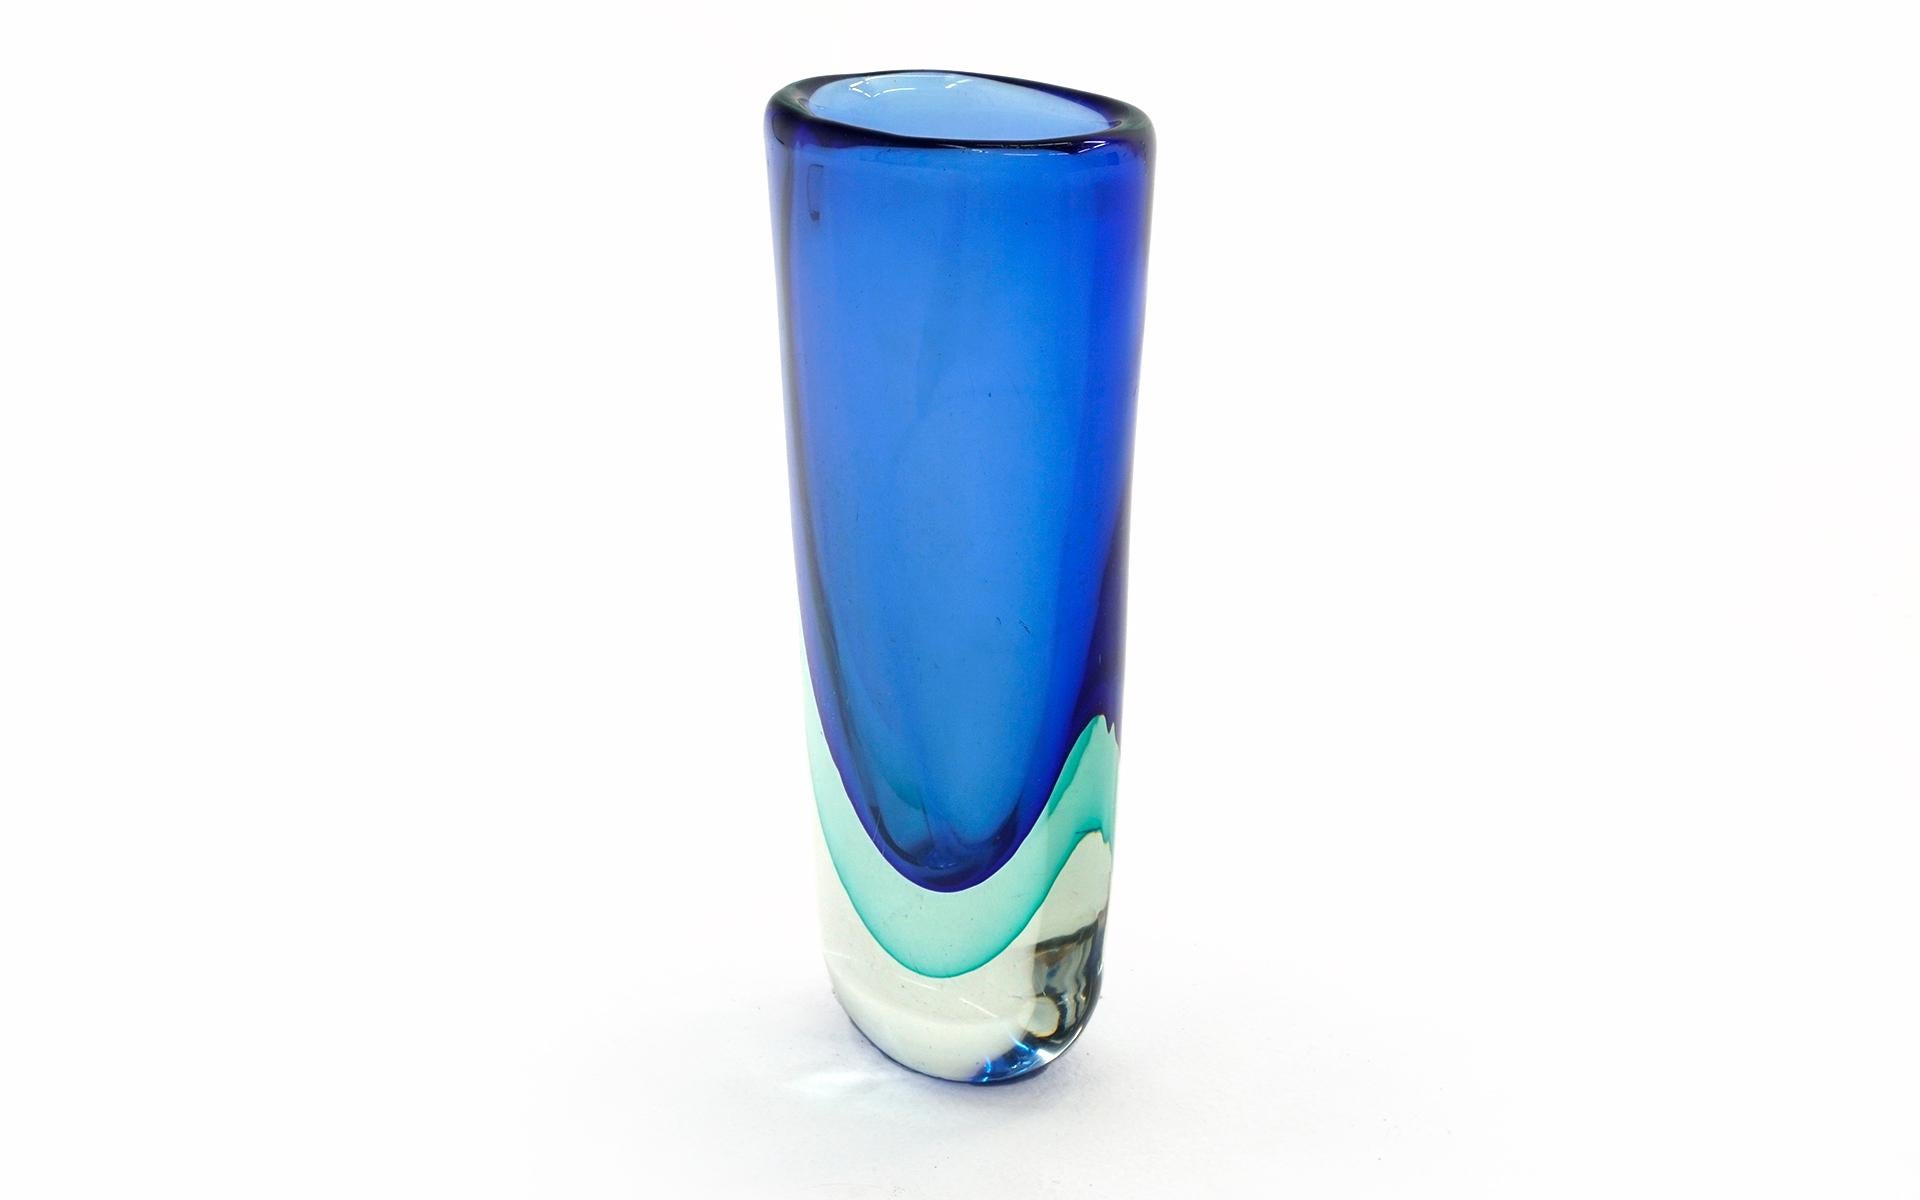 Vase aus geblasenem Muranoglas Sommerso. Dick und schwer, schöne blaue und teal/grüne Farben. Winzige Flohbisse am unteren Rand und Kratzer auf der Unterseite.